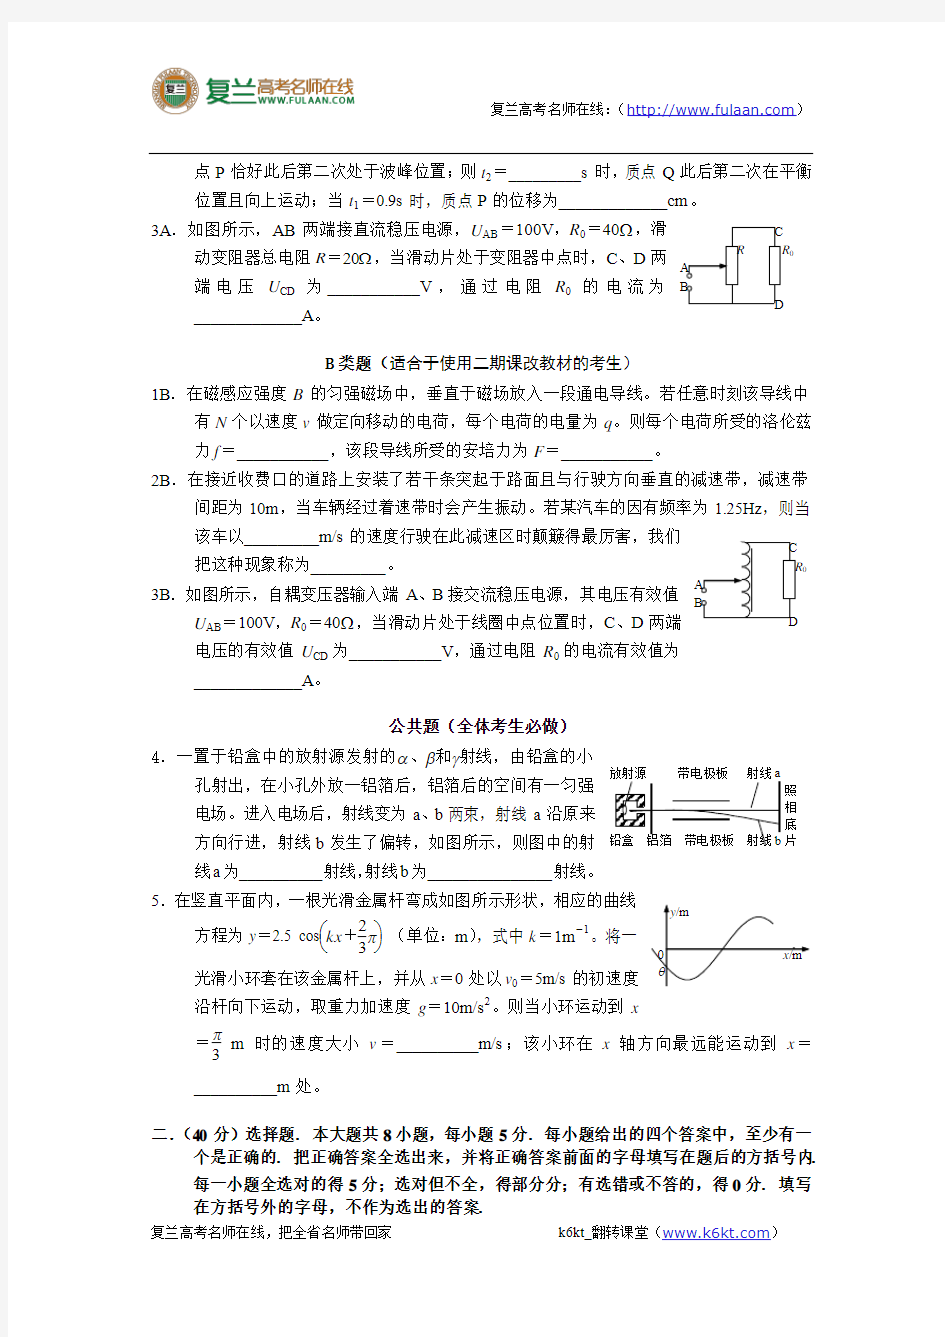 2007年高考试题——物理(上海卷)-精编解析版